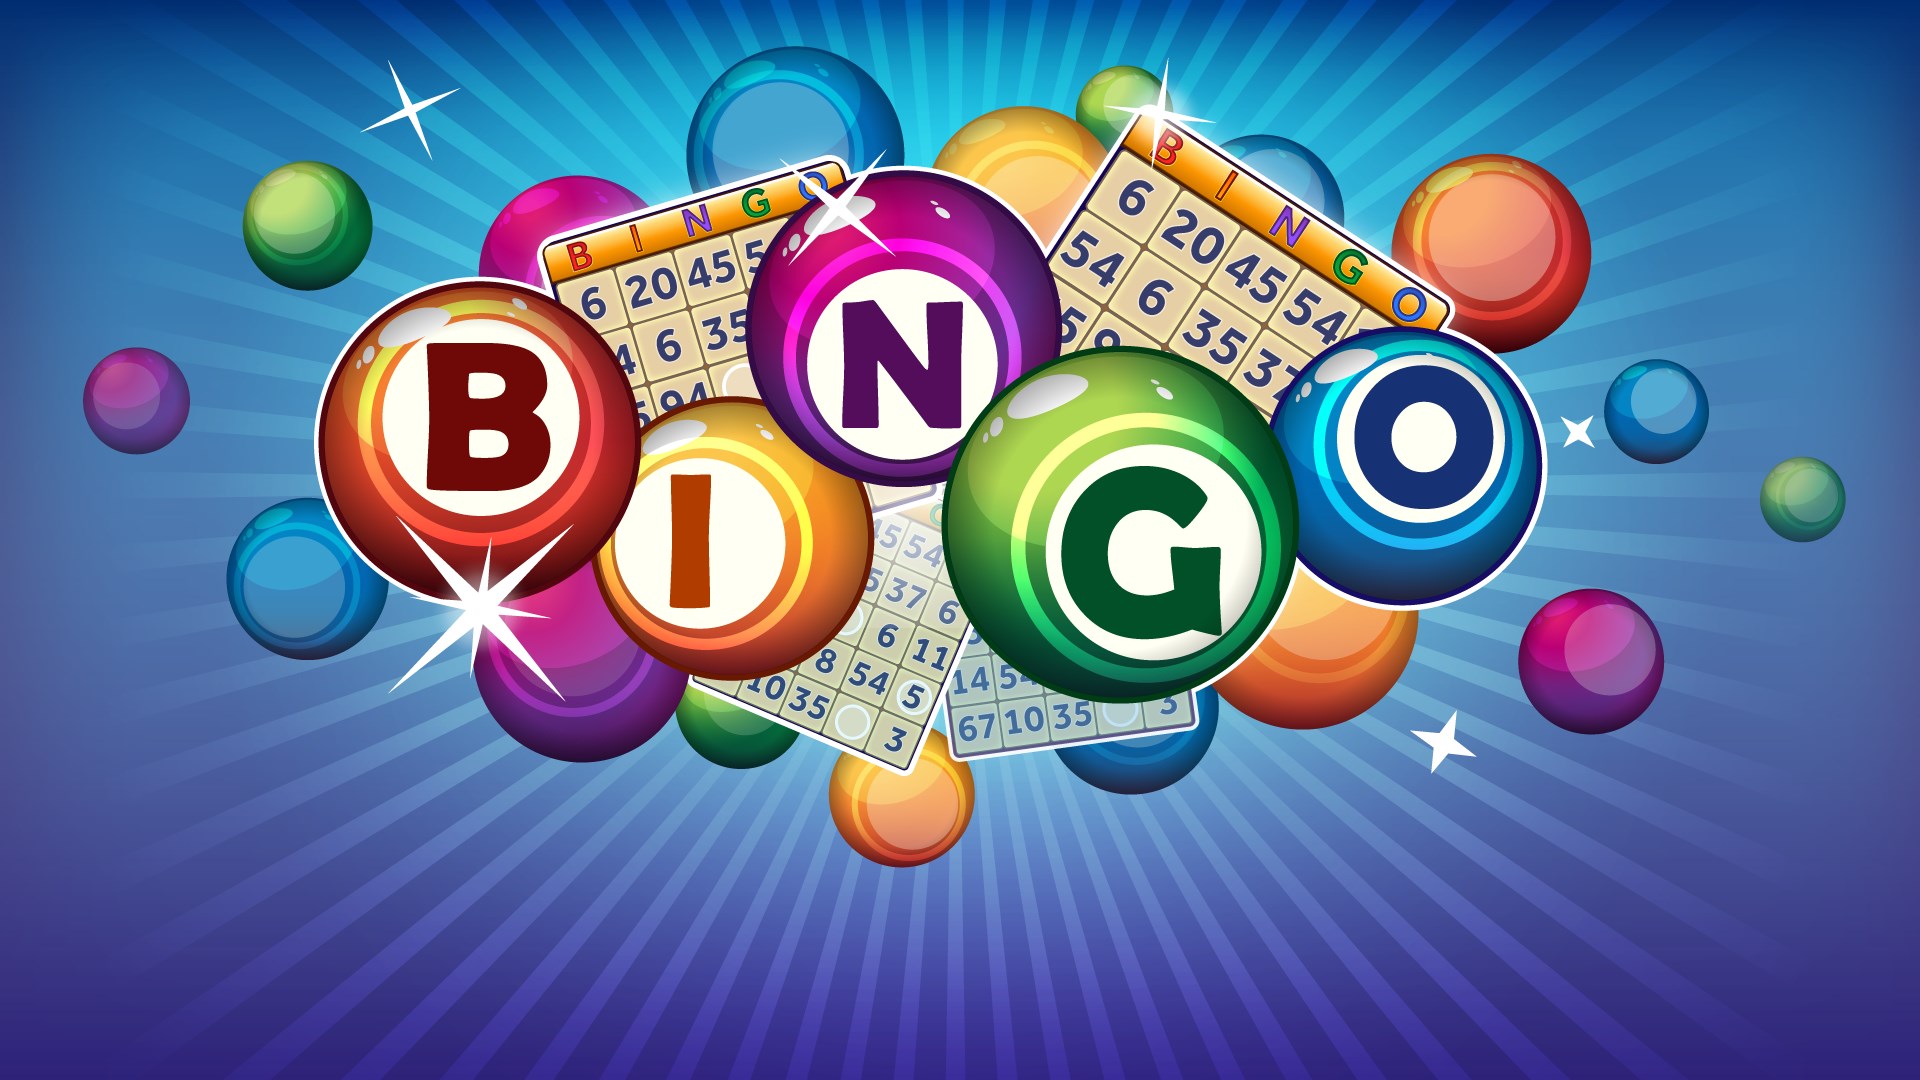 bonus casinò online ippica bingo scommesse